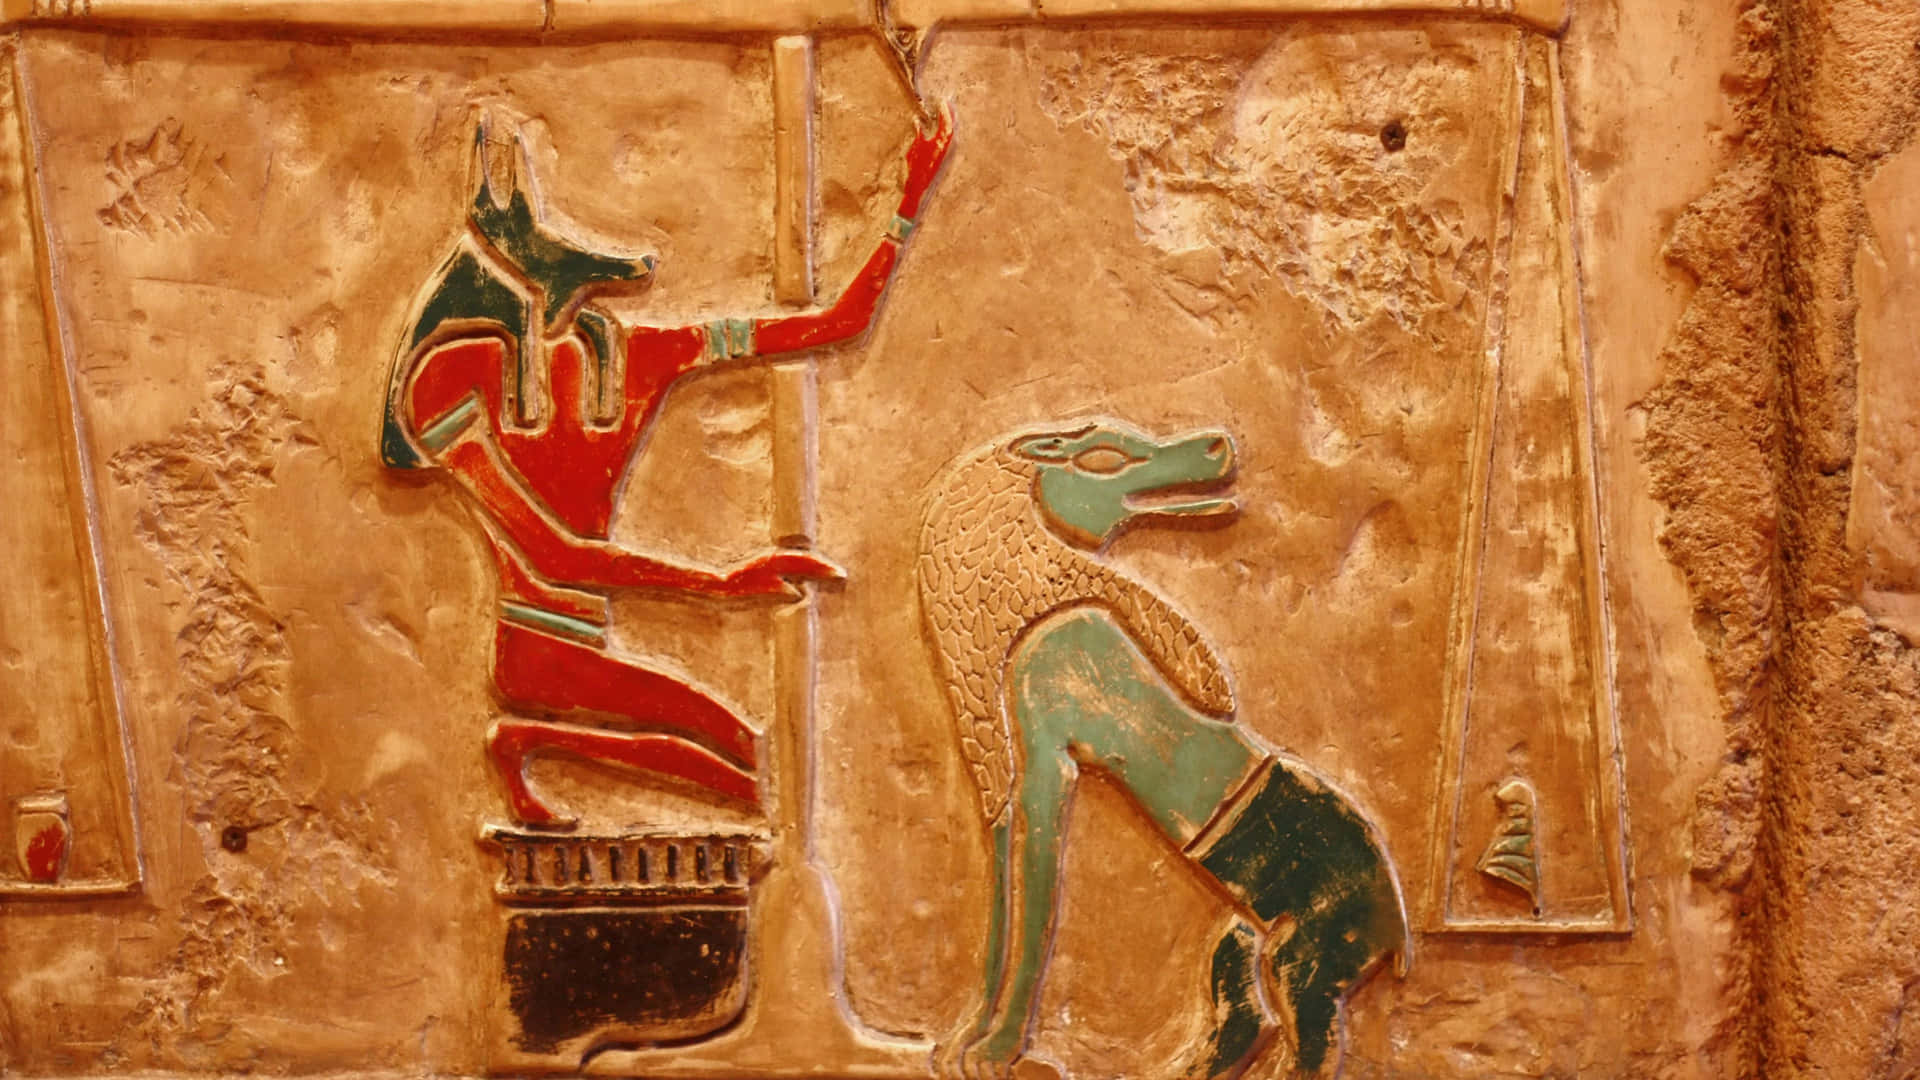 Ilmaestoso Paesaggio Dell'antico Egitto